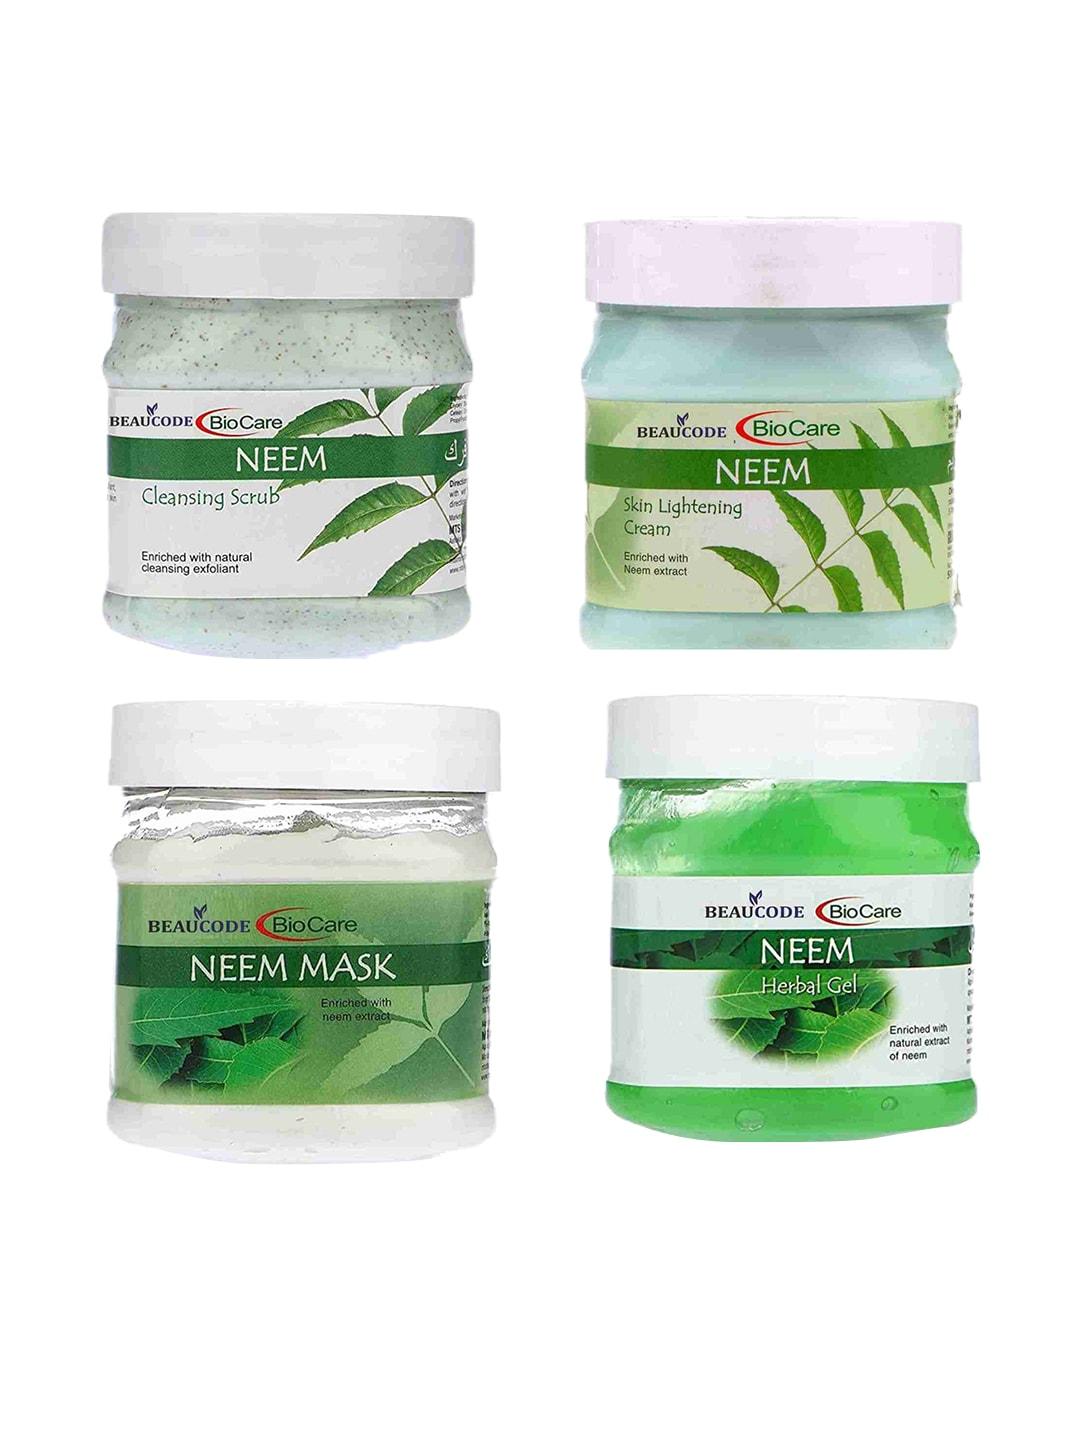 BEAUCODE BIOCARE Neem Four Steps Facial Kit - 250 ml each